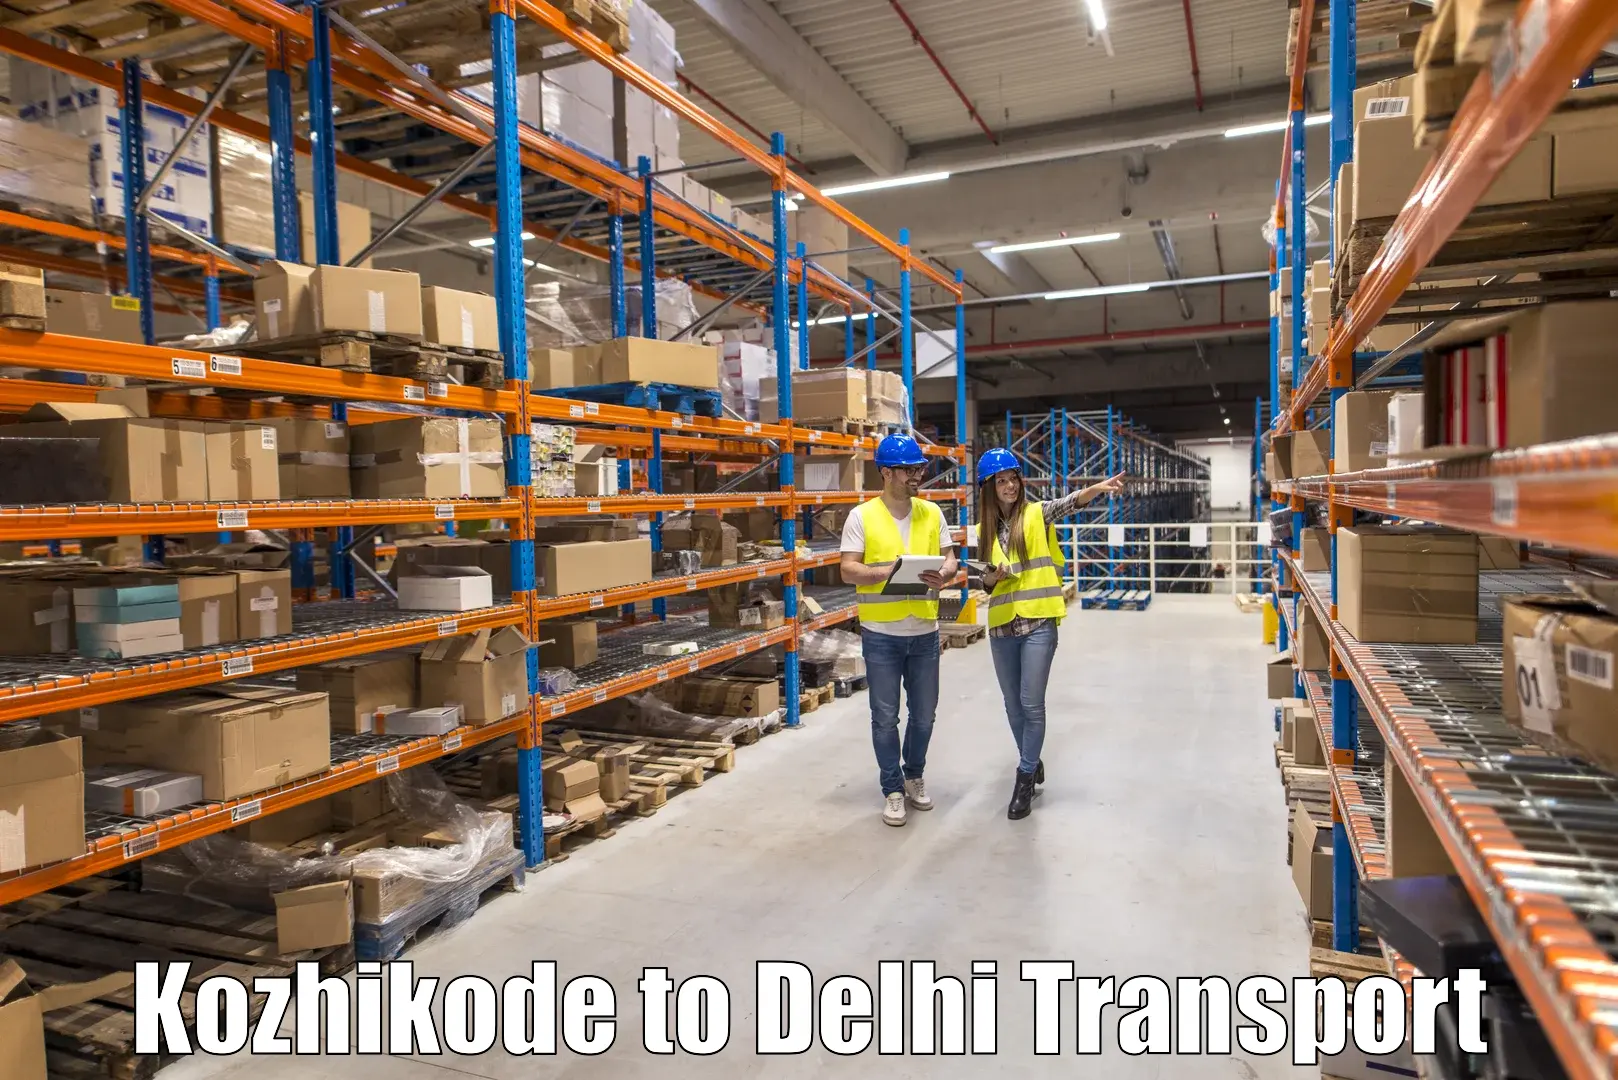 Express transport services Kozhikode to Jamia Millia Islamia New Delhi